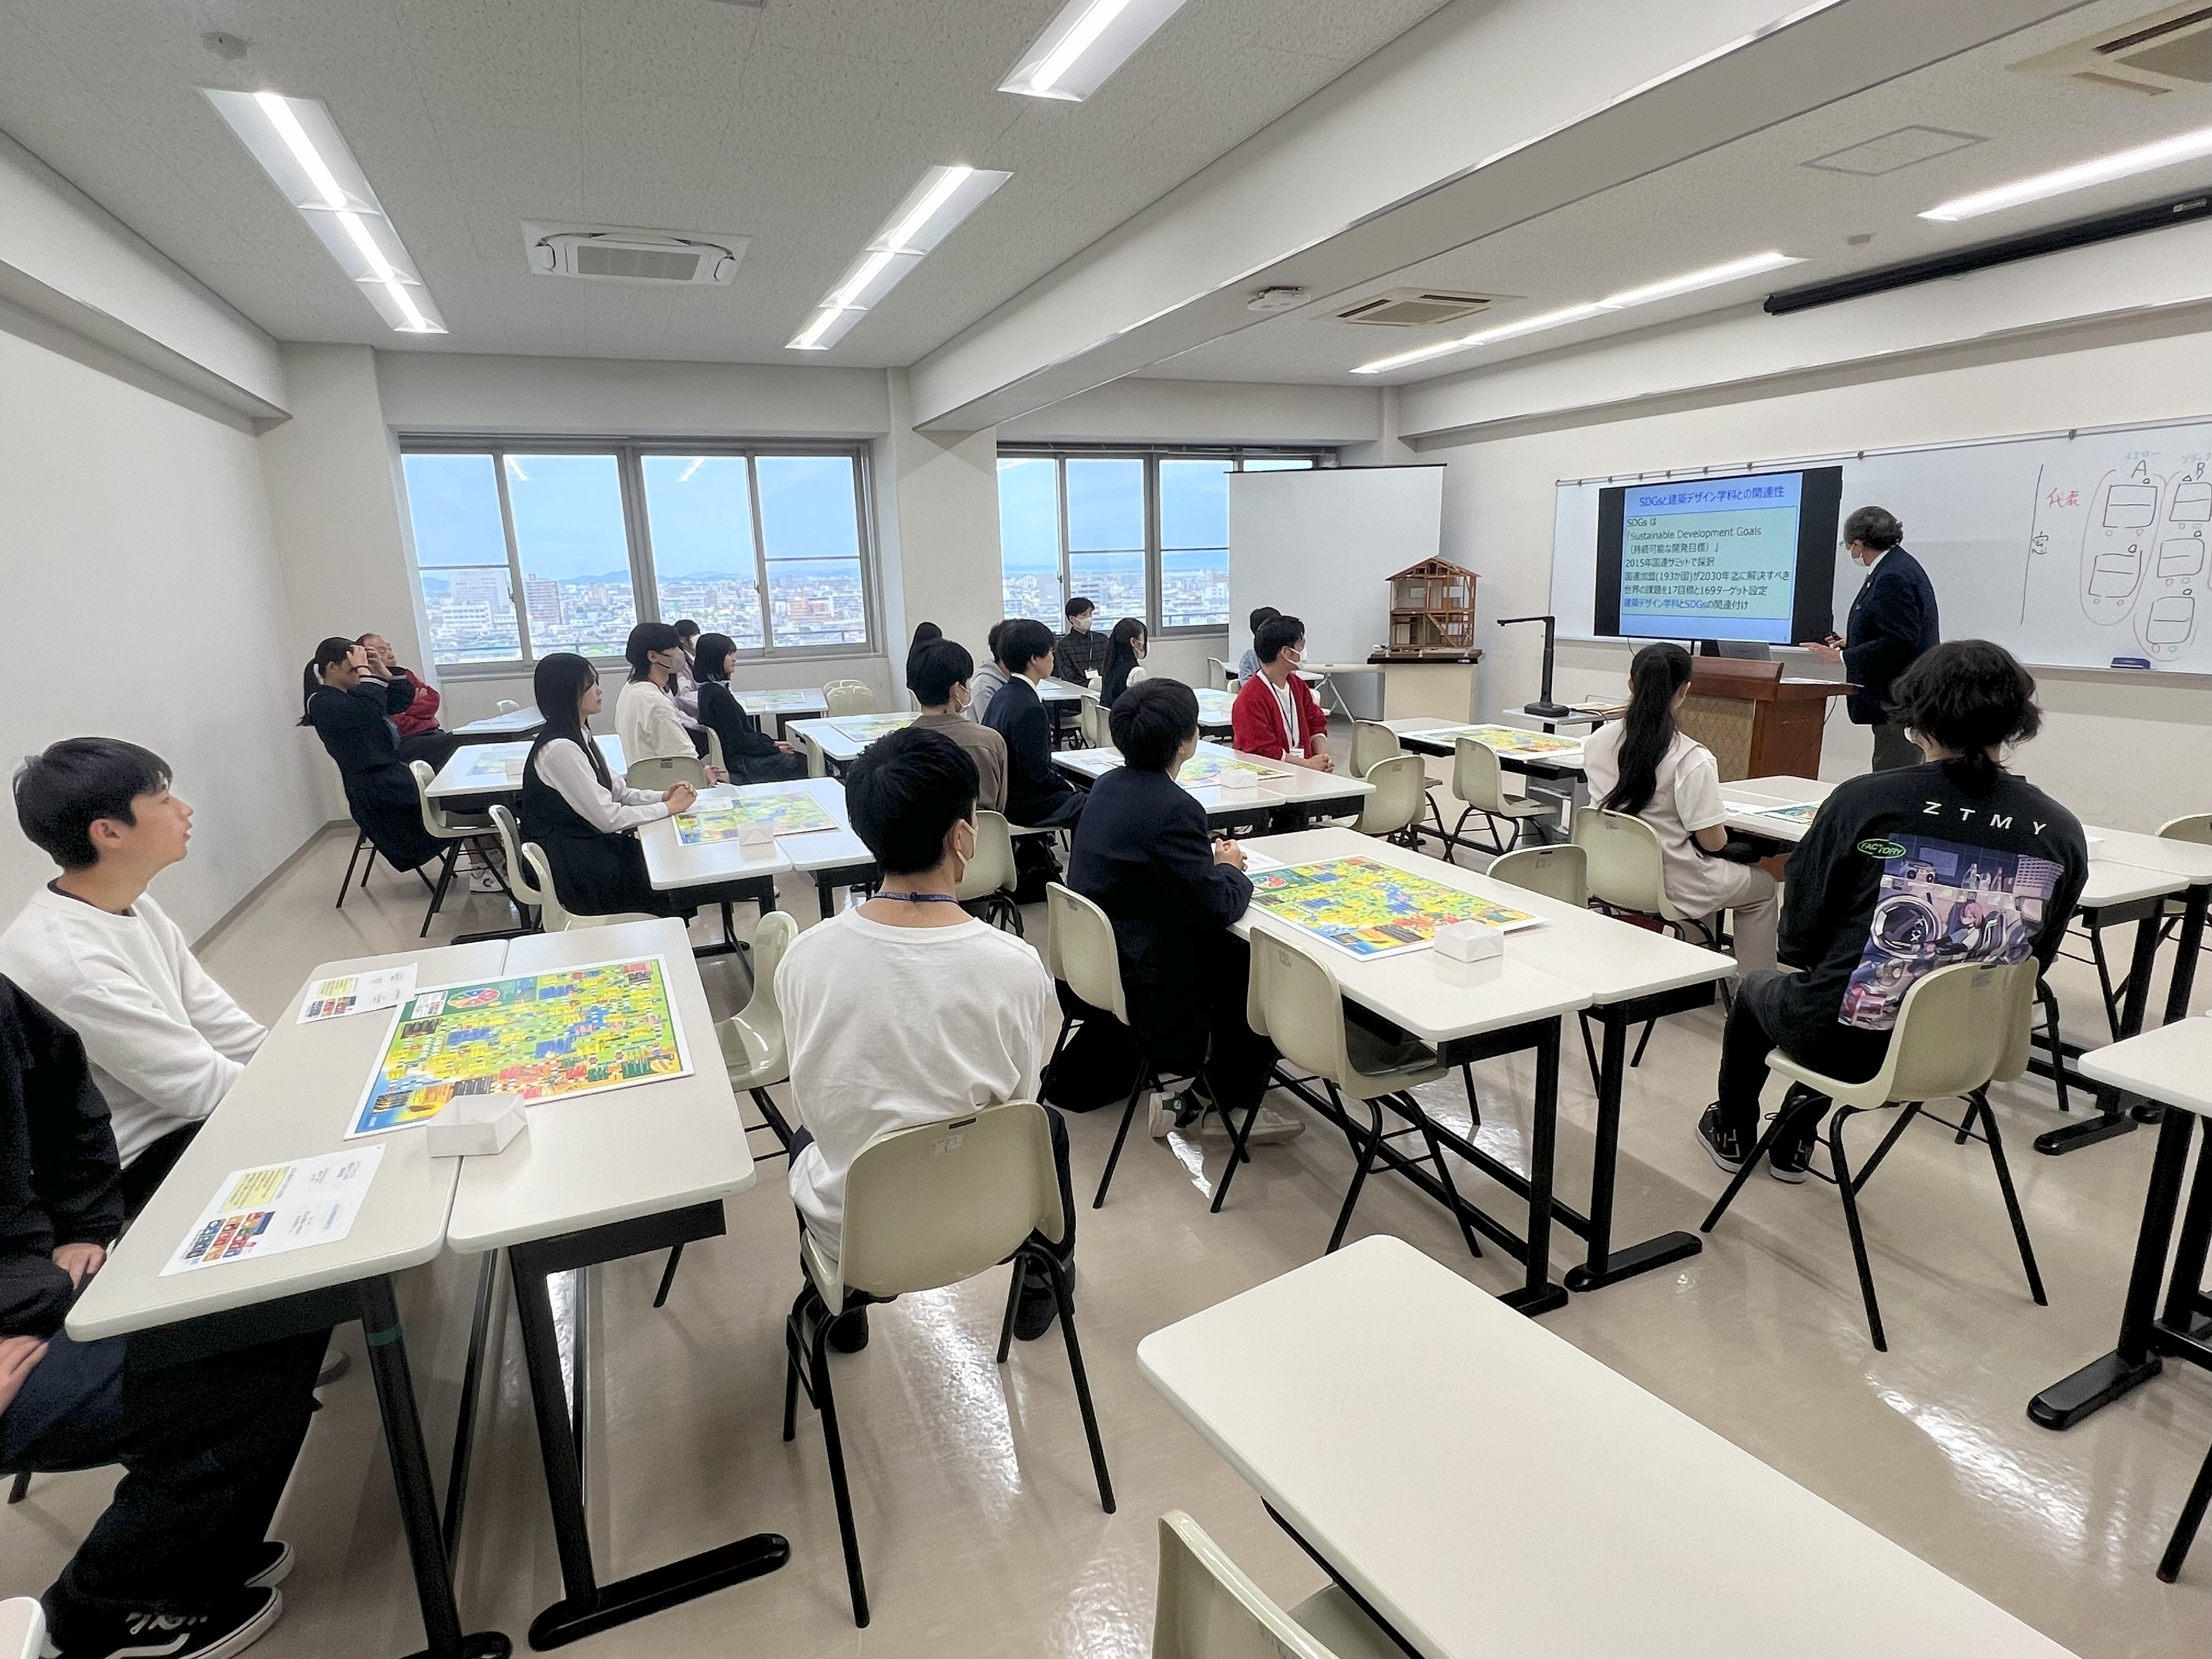 上田教授のSDGsと建築デザイン講義